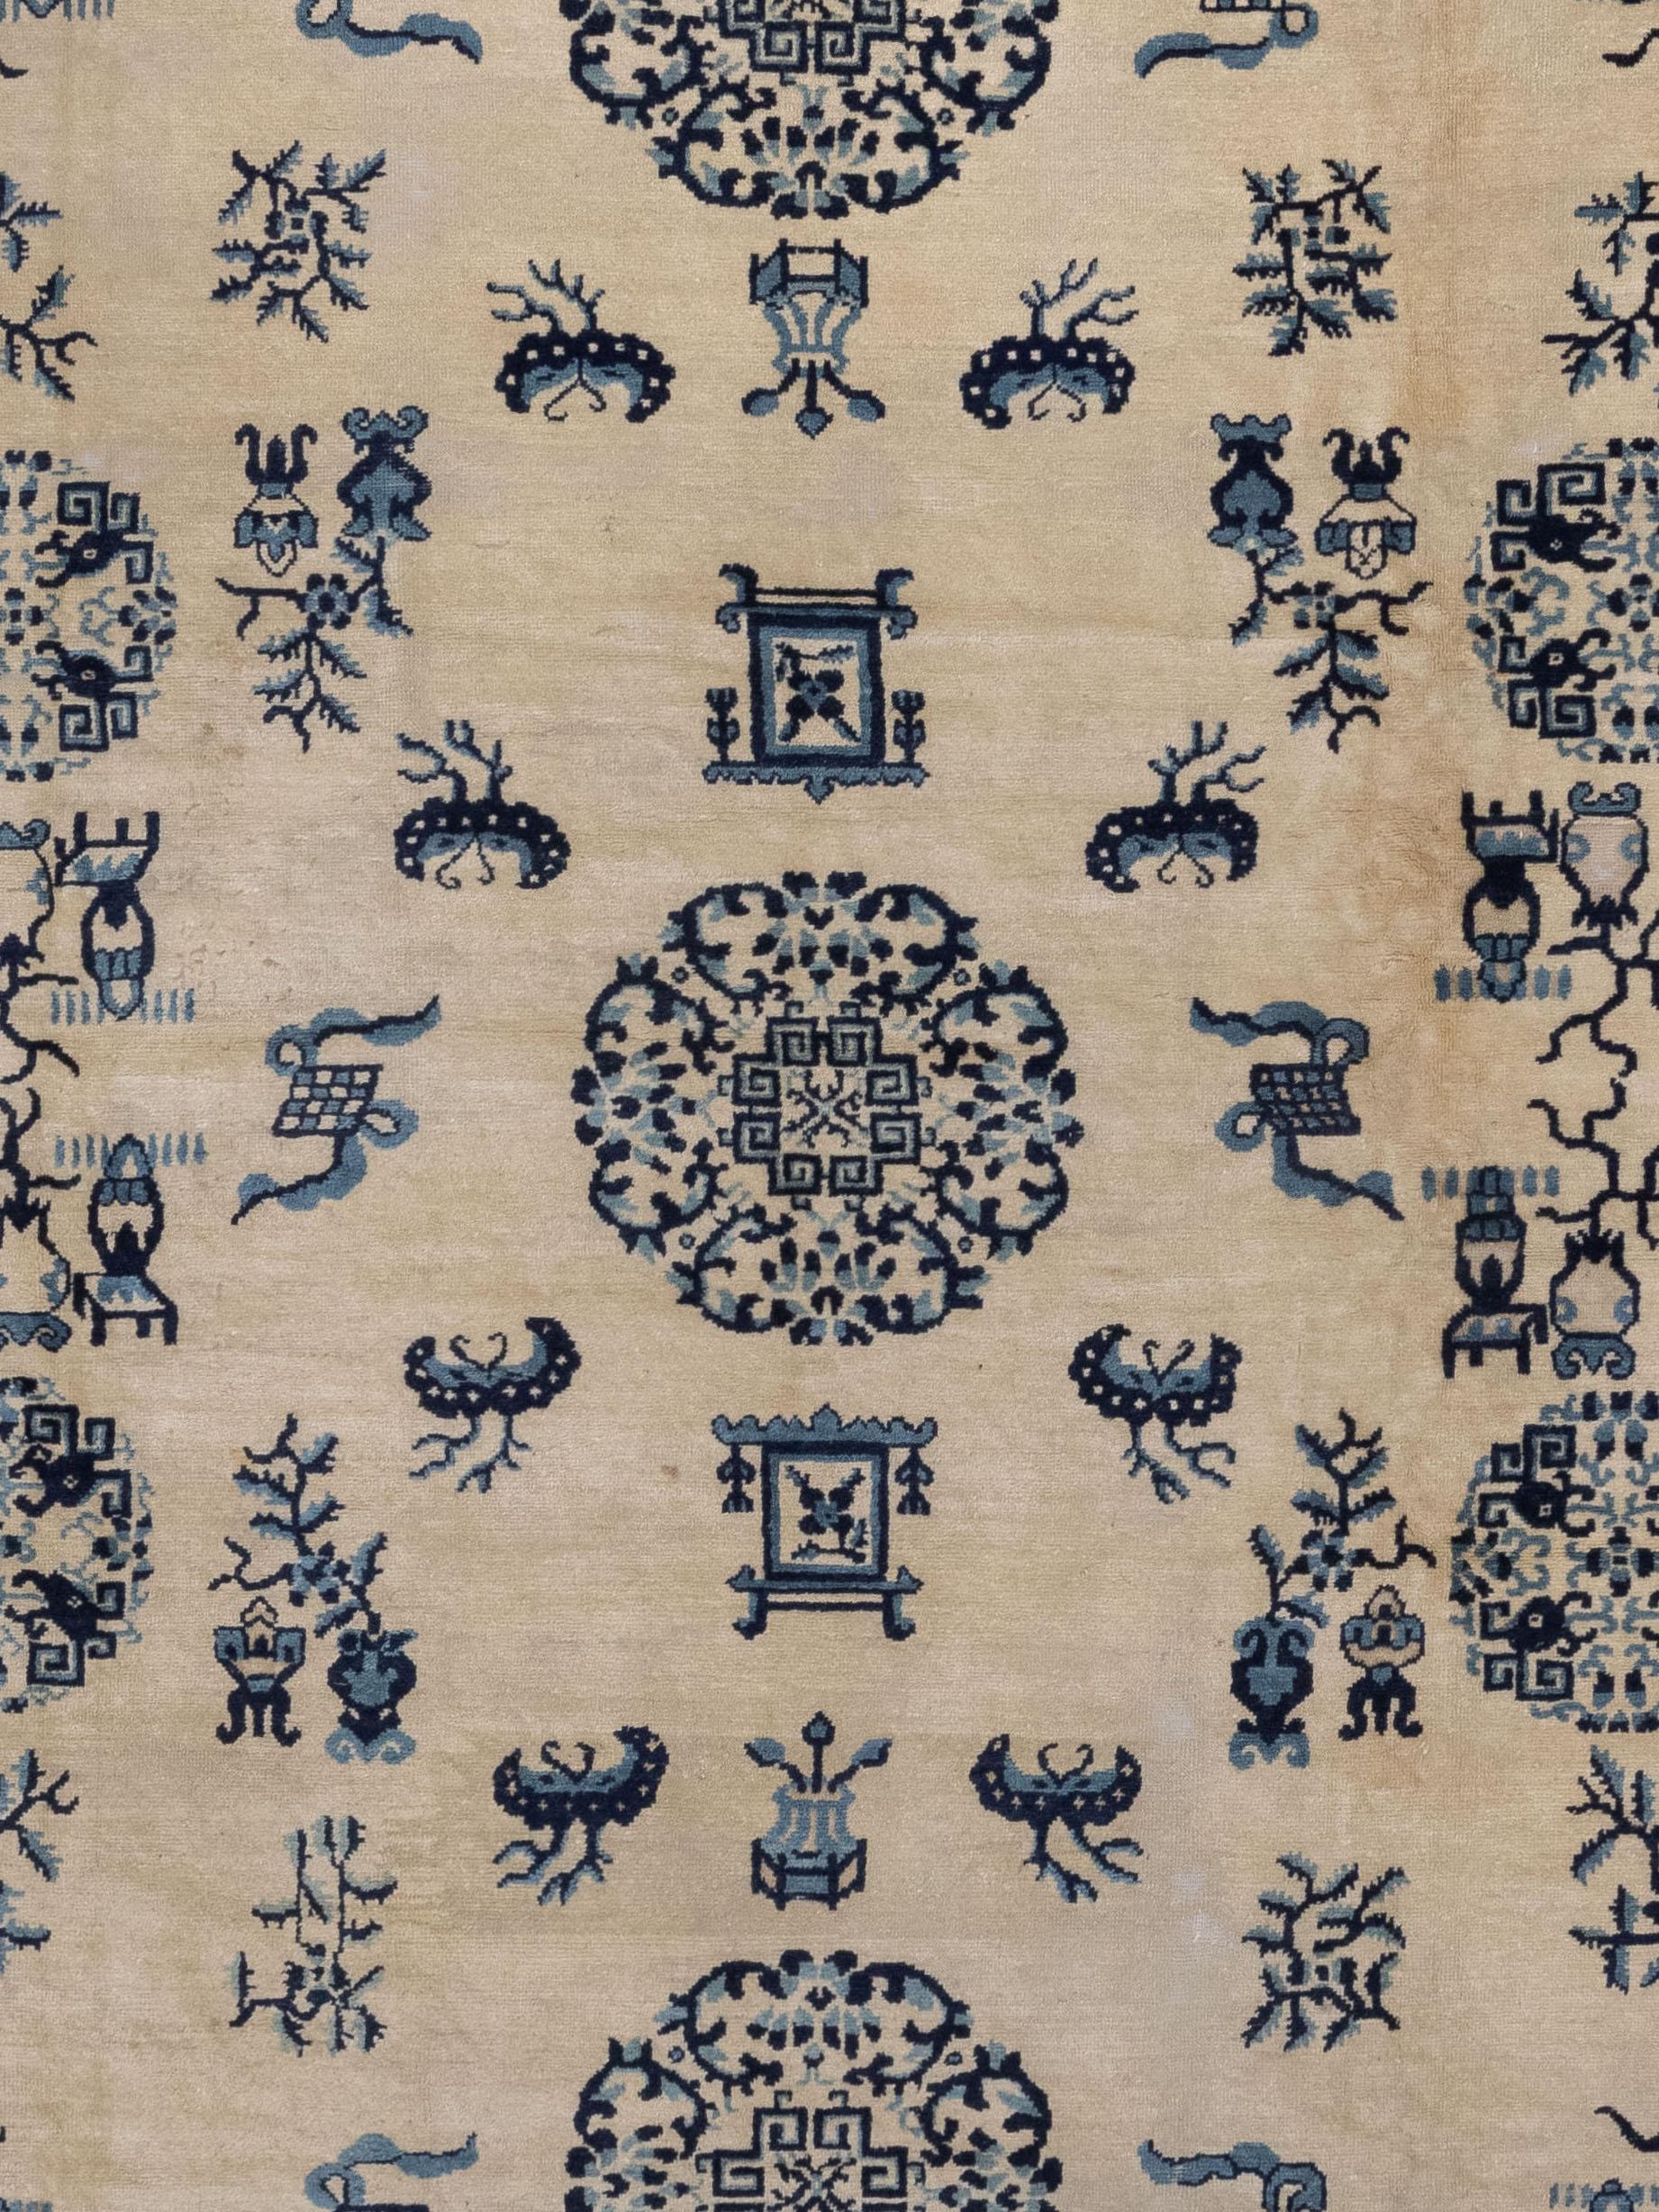 Ce tapis provient de la ville de Ningxia, dans l'ouest de la Chine, où la majorité des tapis sont d'origine impériale. Ce style de tapis se caractérise par des couleurs très contrastées et l'utilisation de symboles tels que des bandes de nuages ou